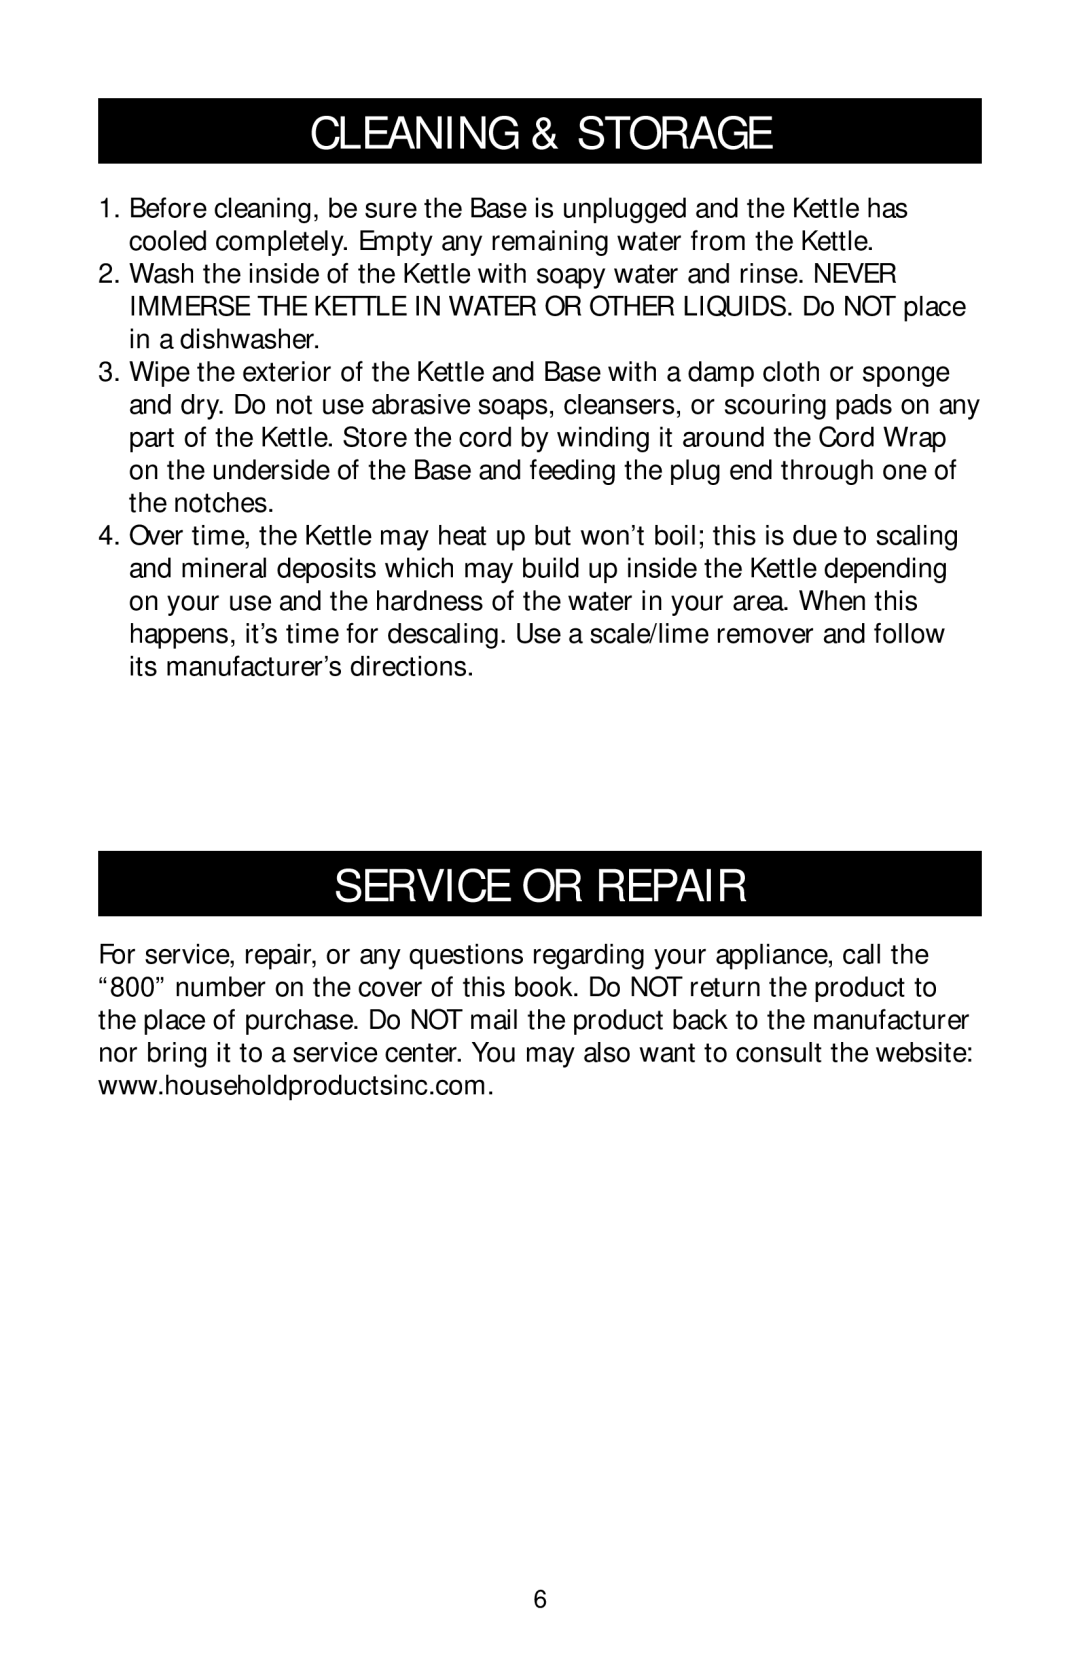 Black & Decker MDG550 owner manual Cleaning & Storage, Service Or Repair 